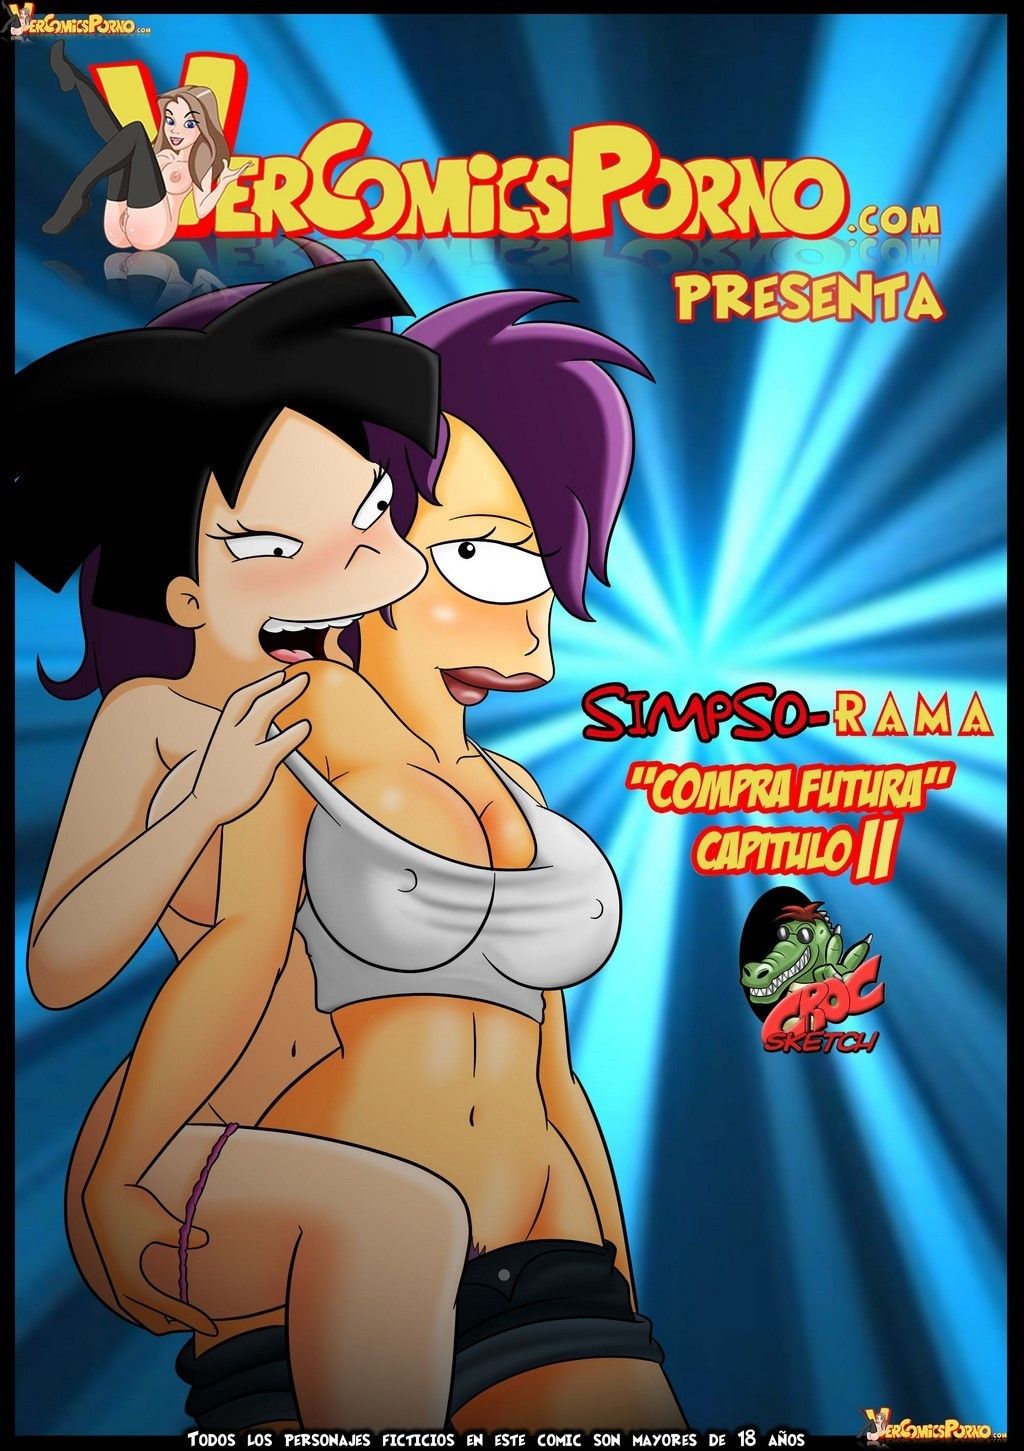 Los simpson version porno